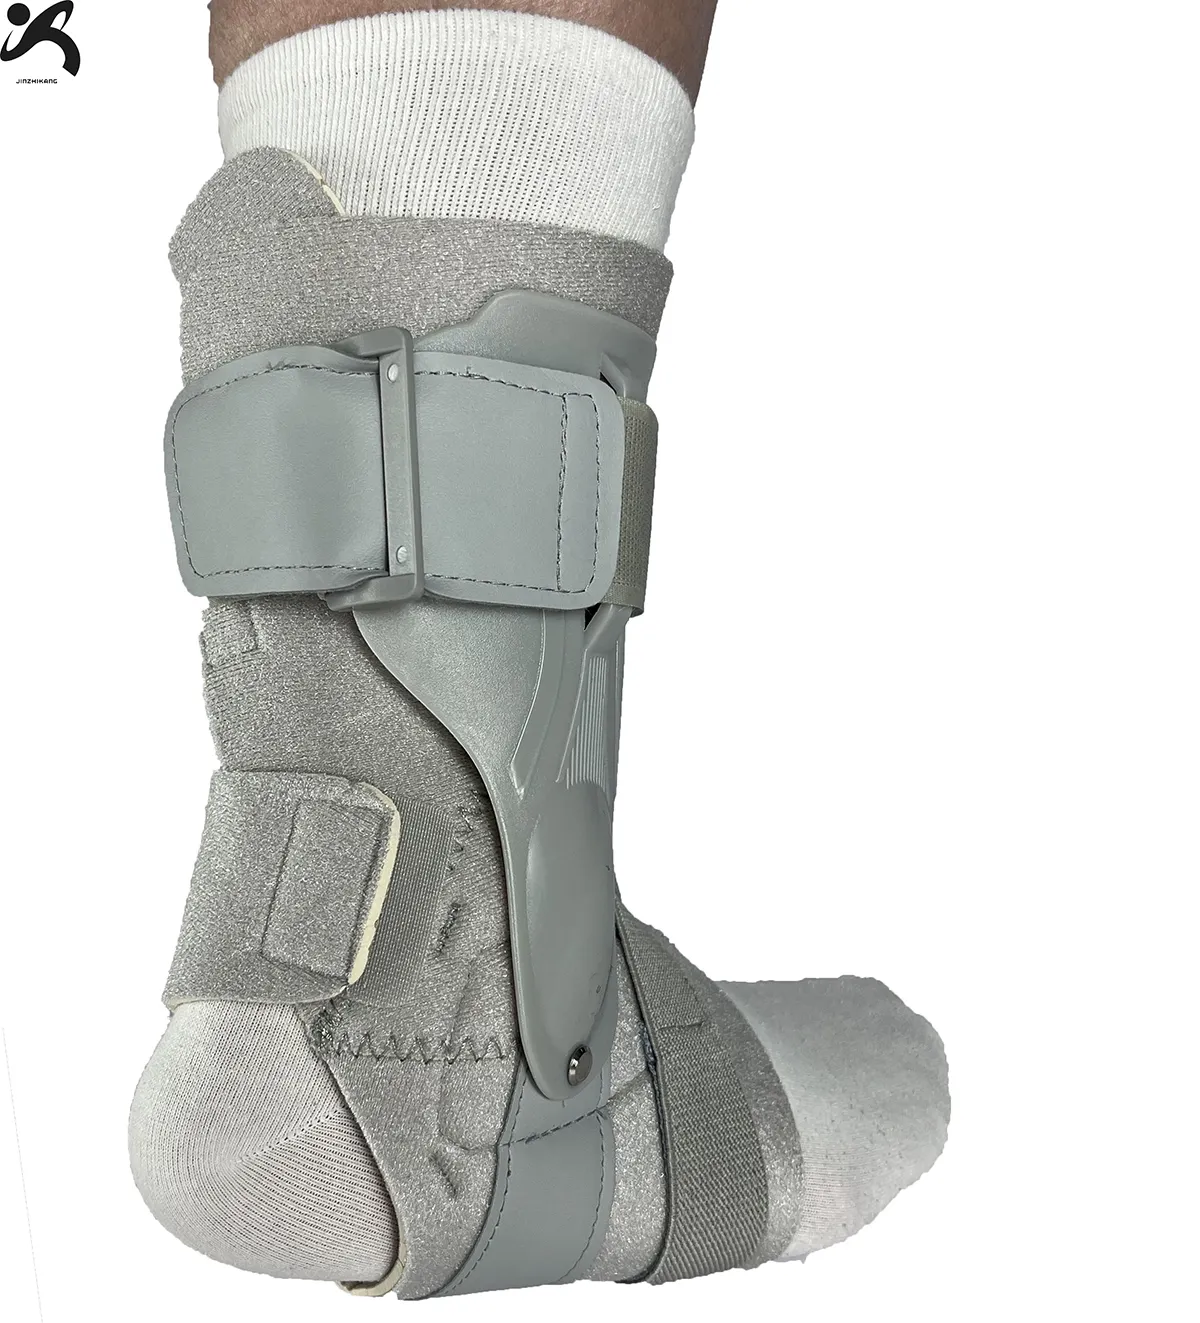 ที่รัดข้อเท้าสำหรับรักษาอาการบาดเจ็บที่ข้อเท้าเคล็ดสำหรับฝึกบาสเก็ตบอล